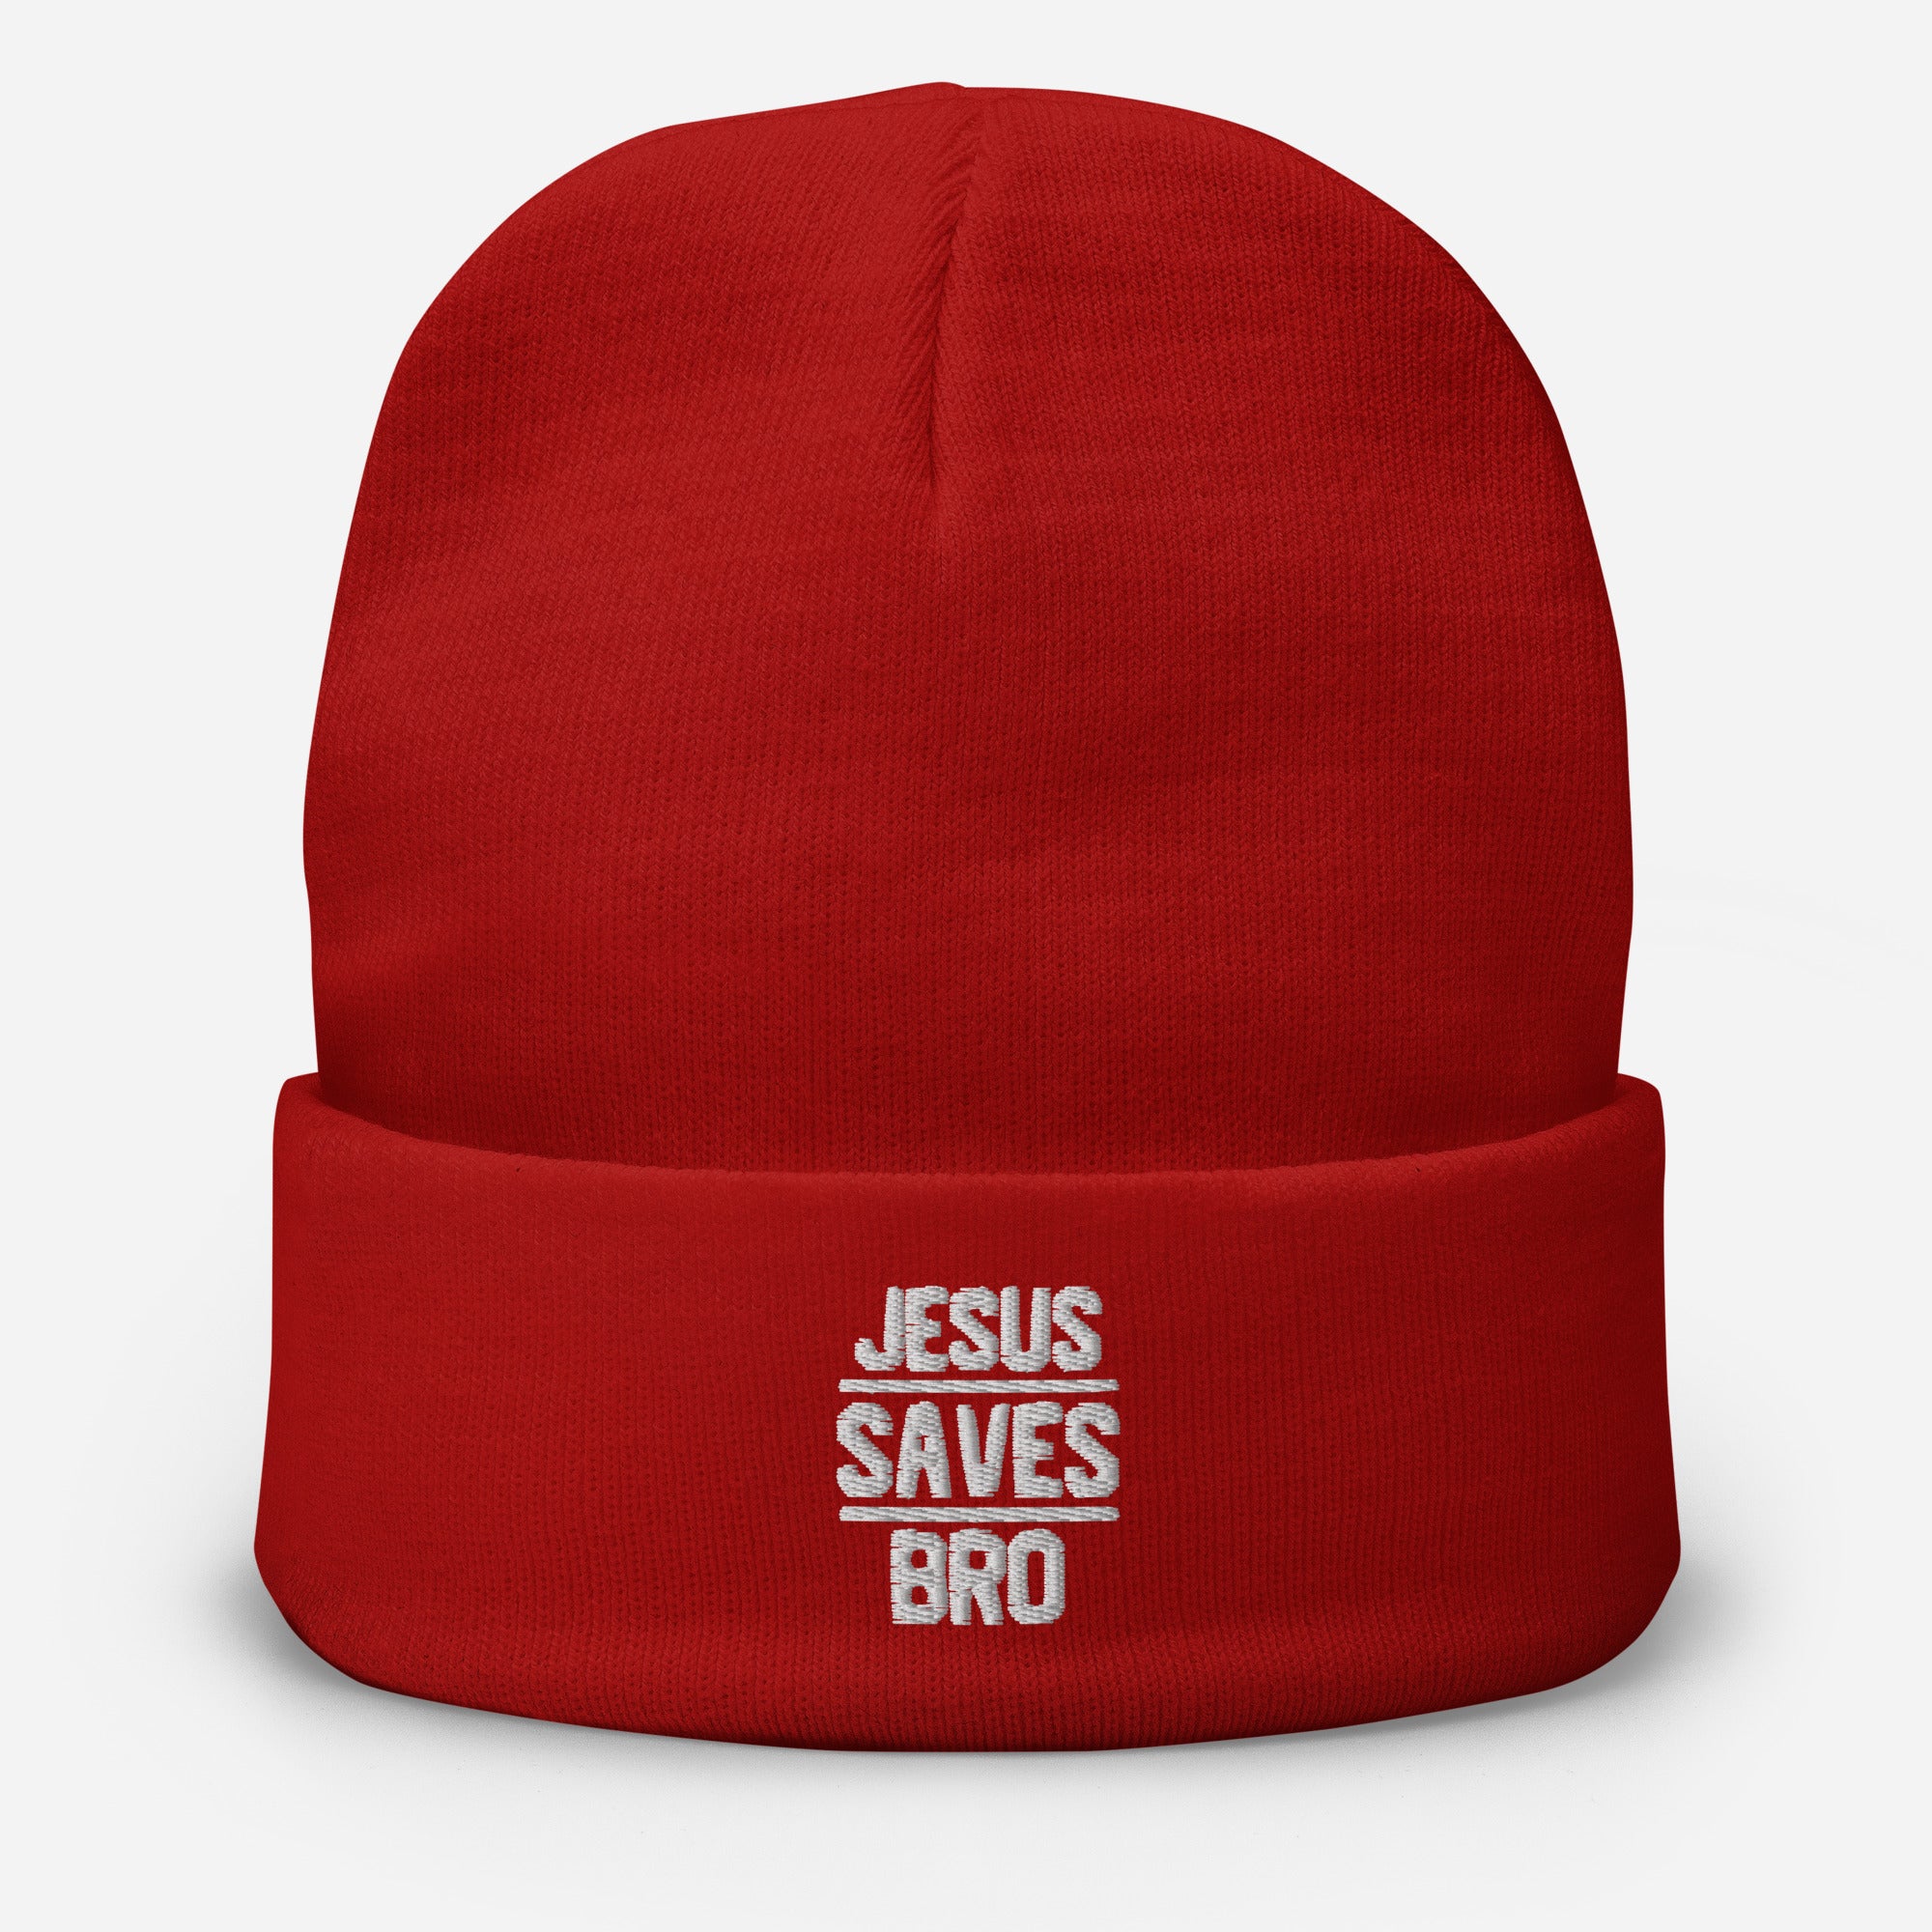 Jesus Saves Bro Beanie